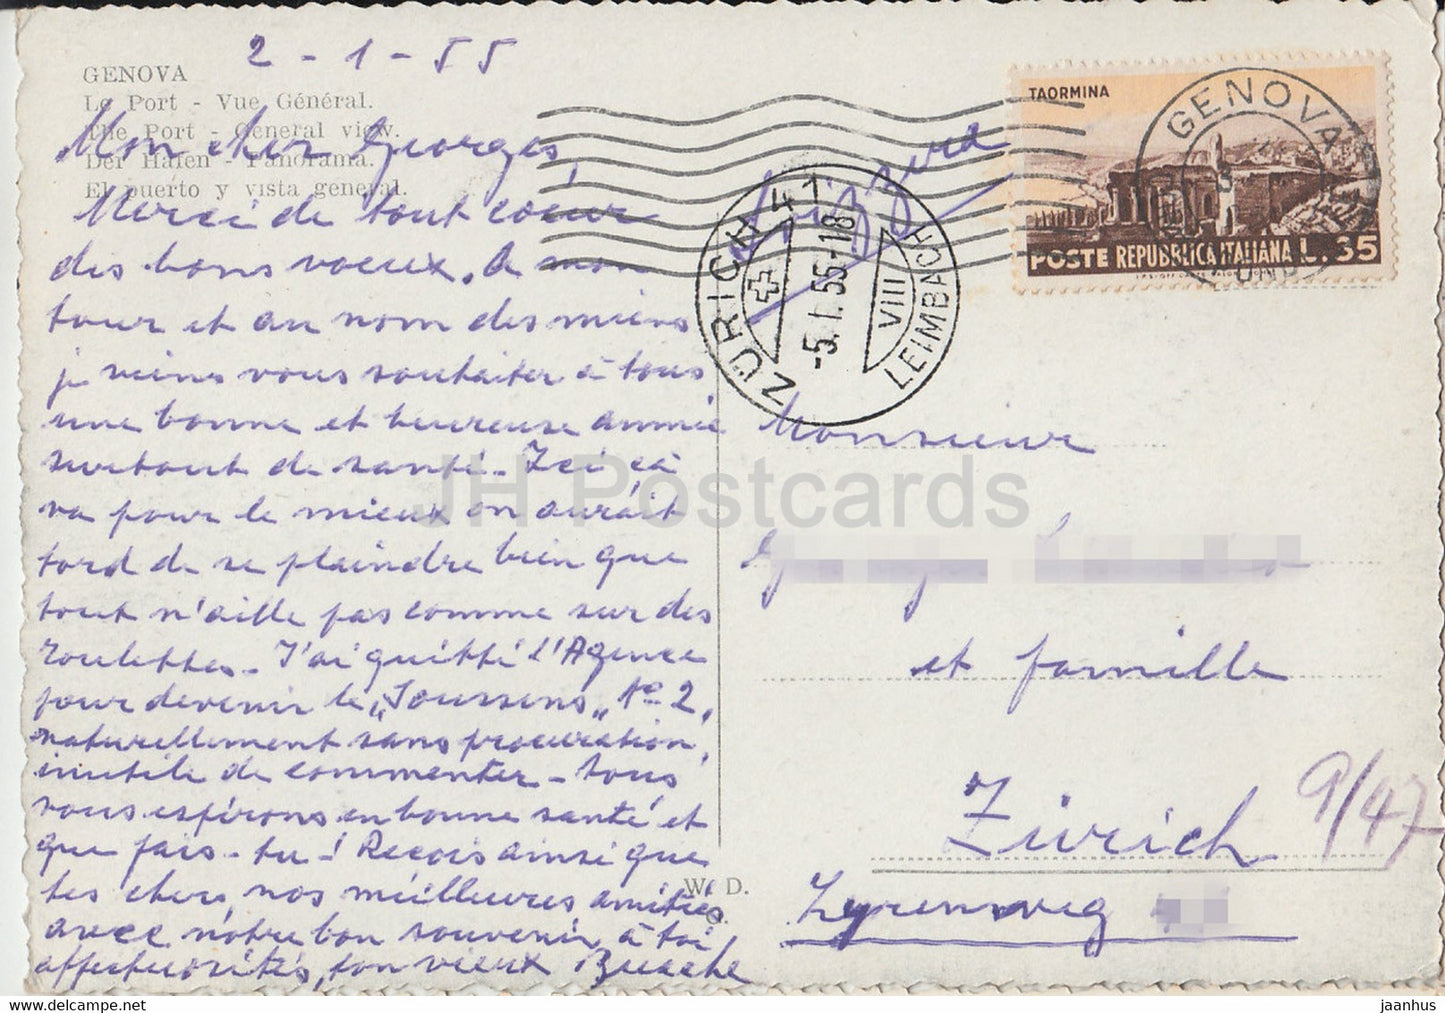 Genova - Genua - Veduta del Porto - Hafen - Schiff - alte Postkarte - 1955 - Italien - gebraucht